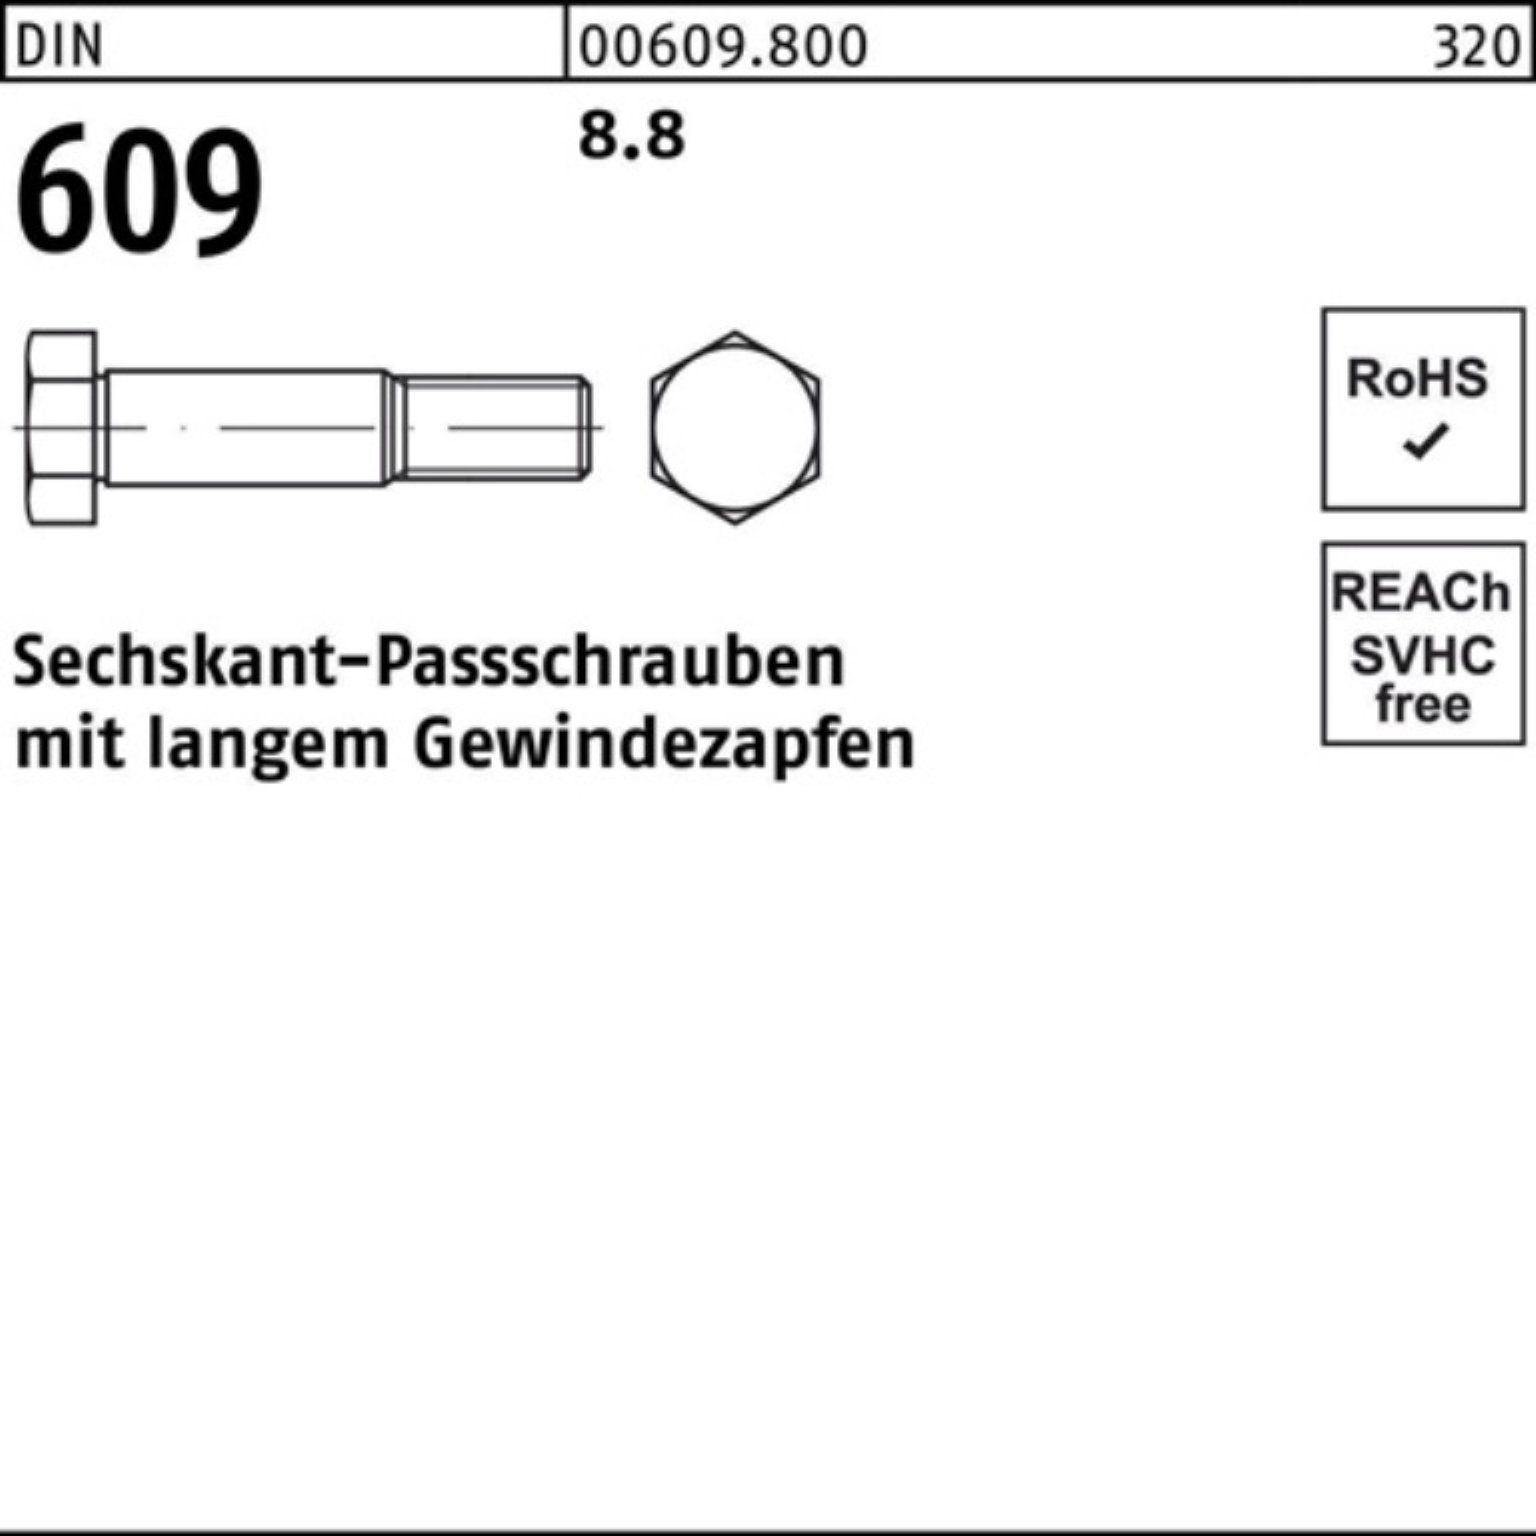 DIN Pack Gewindezapfen 70 langem 609 Sechskantpassschraube 100er Schraube Reyher M14x